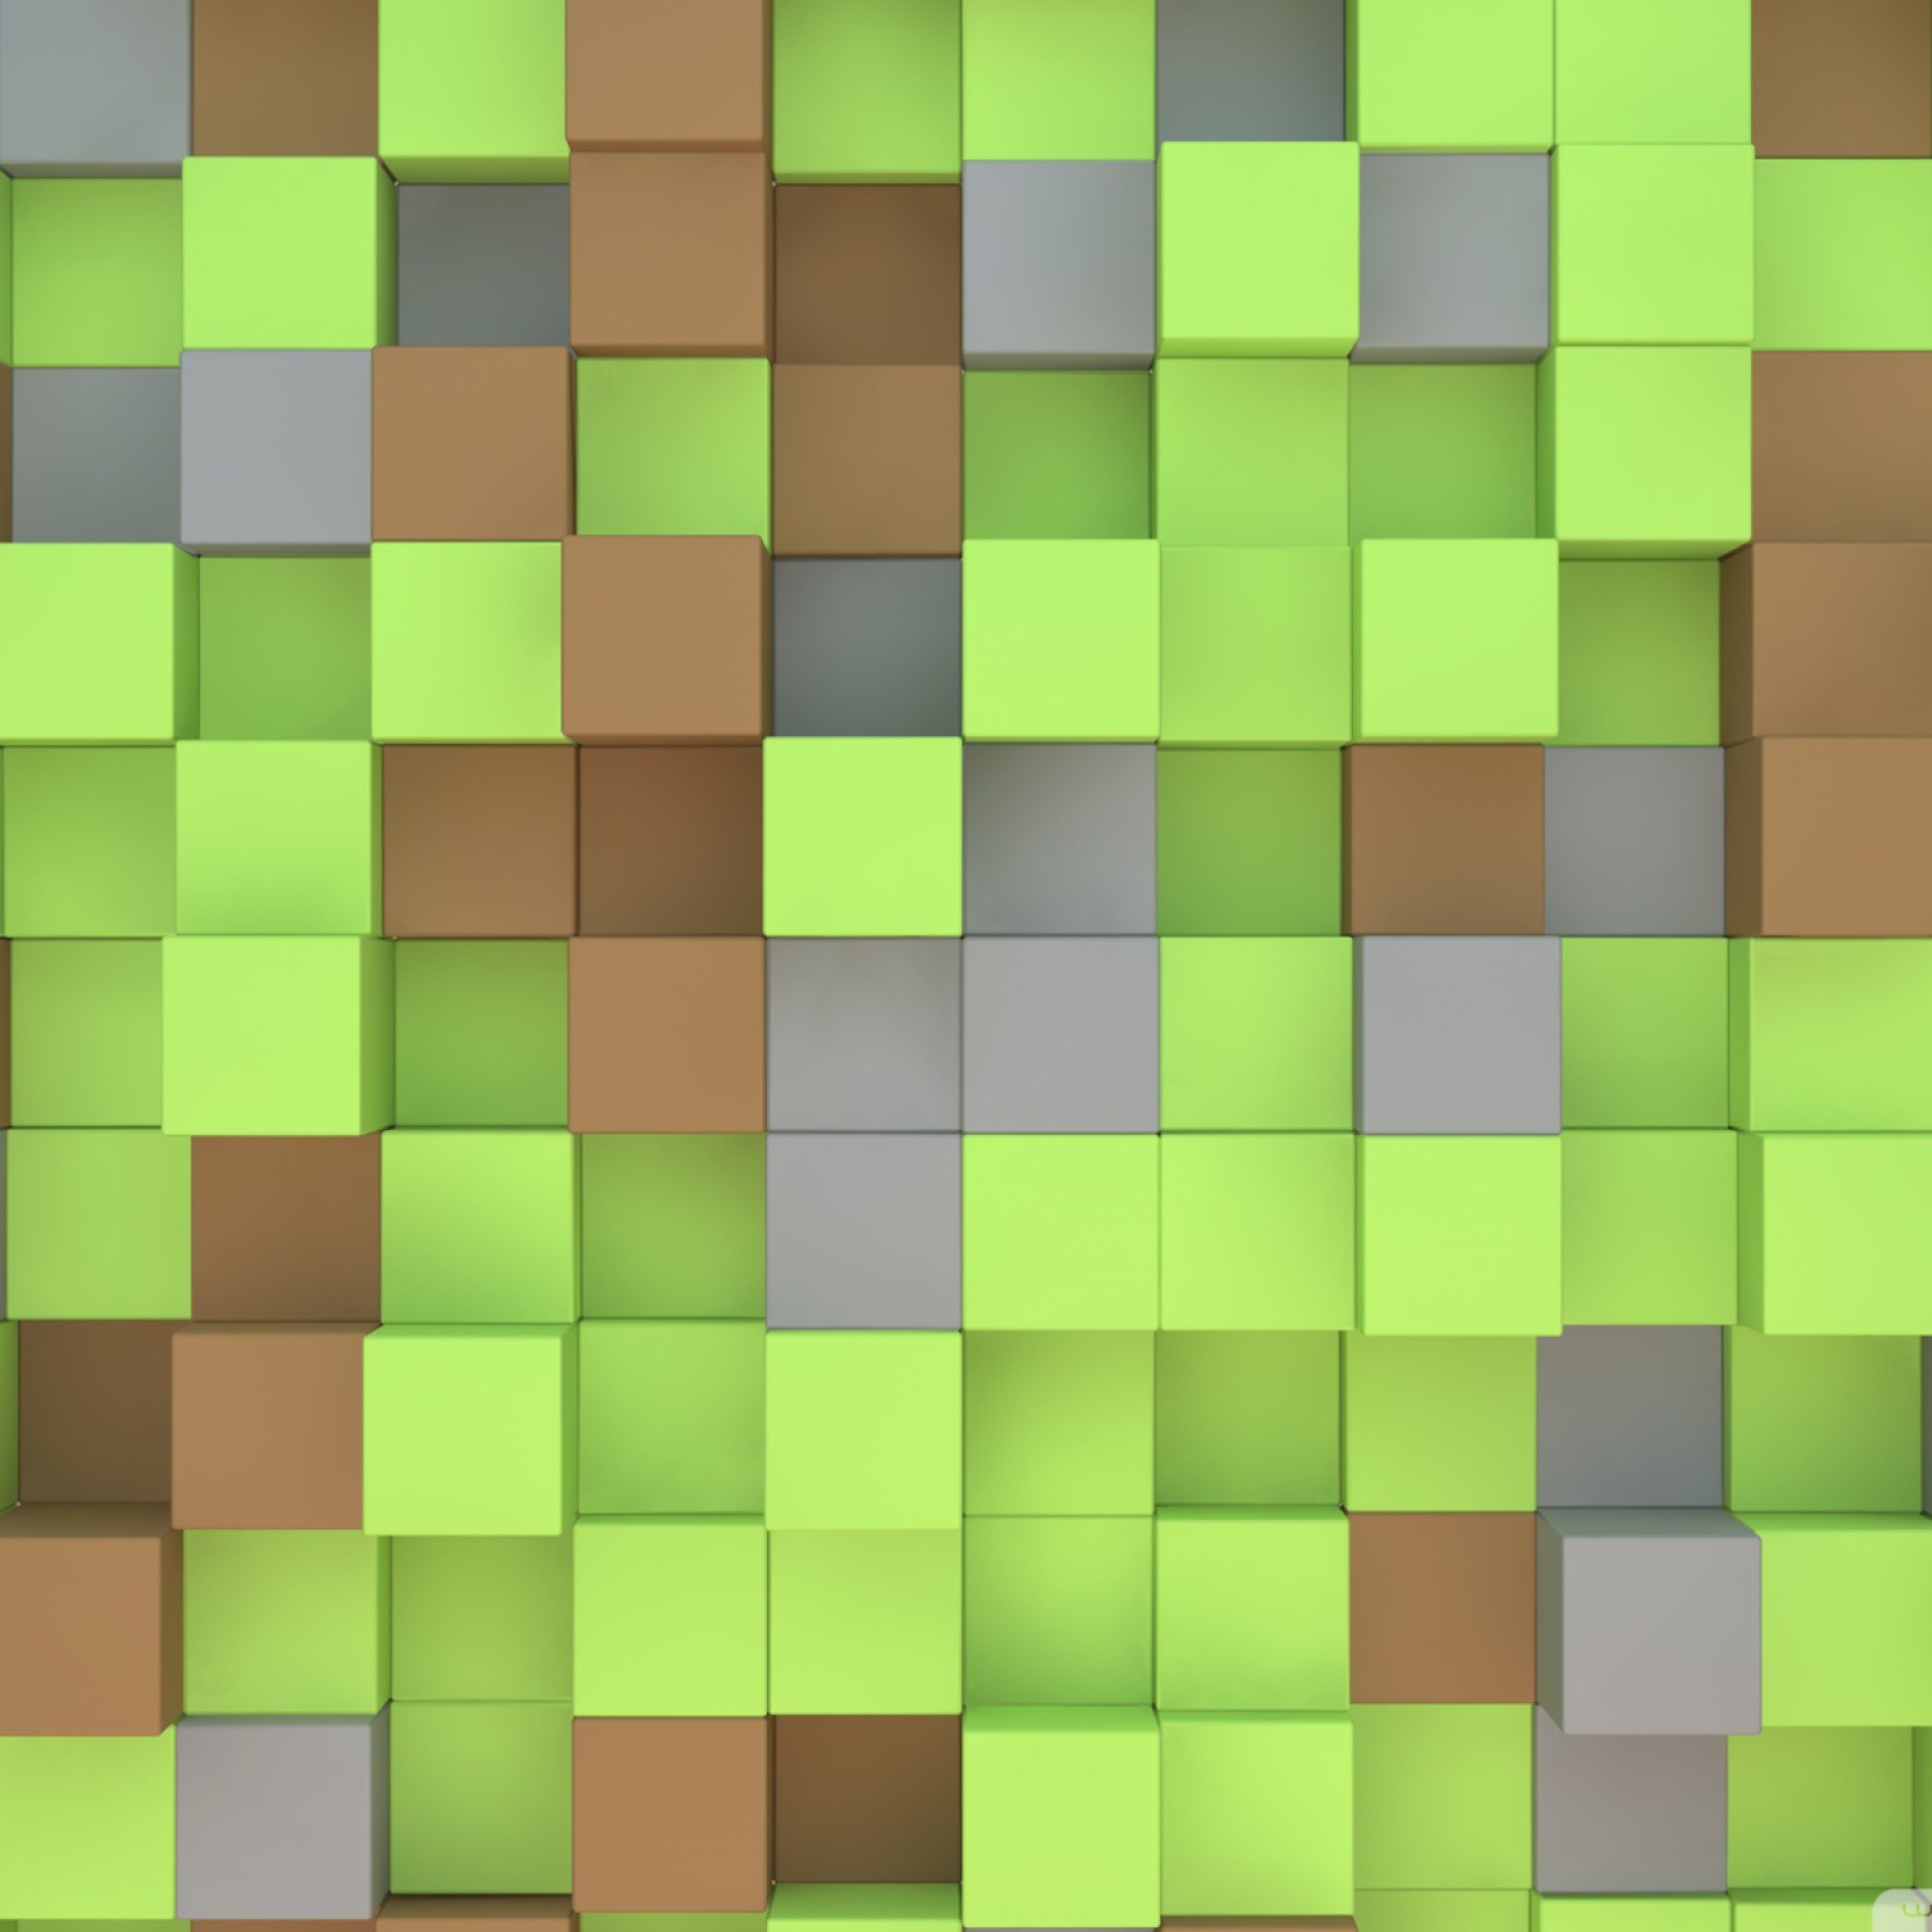 2932x2932 Resolution Minecraft Minimalist Creeper Ipad Pro Retina Display  Wallpaper  Wallpapers Den